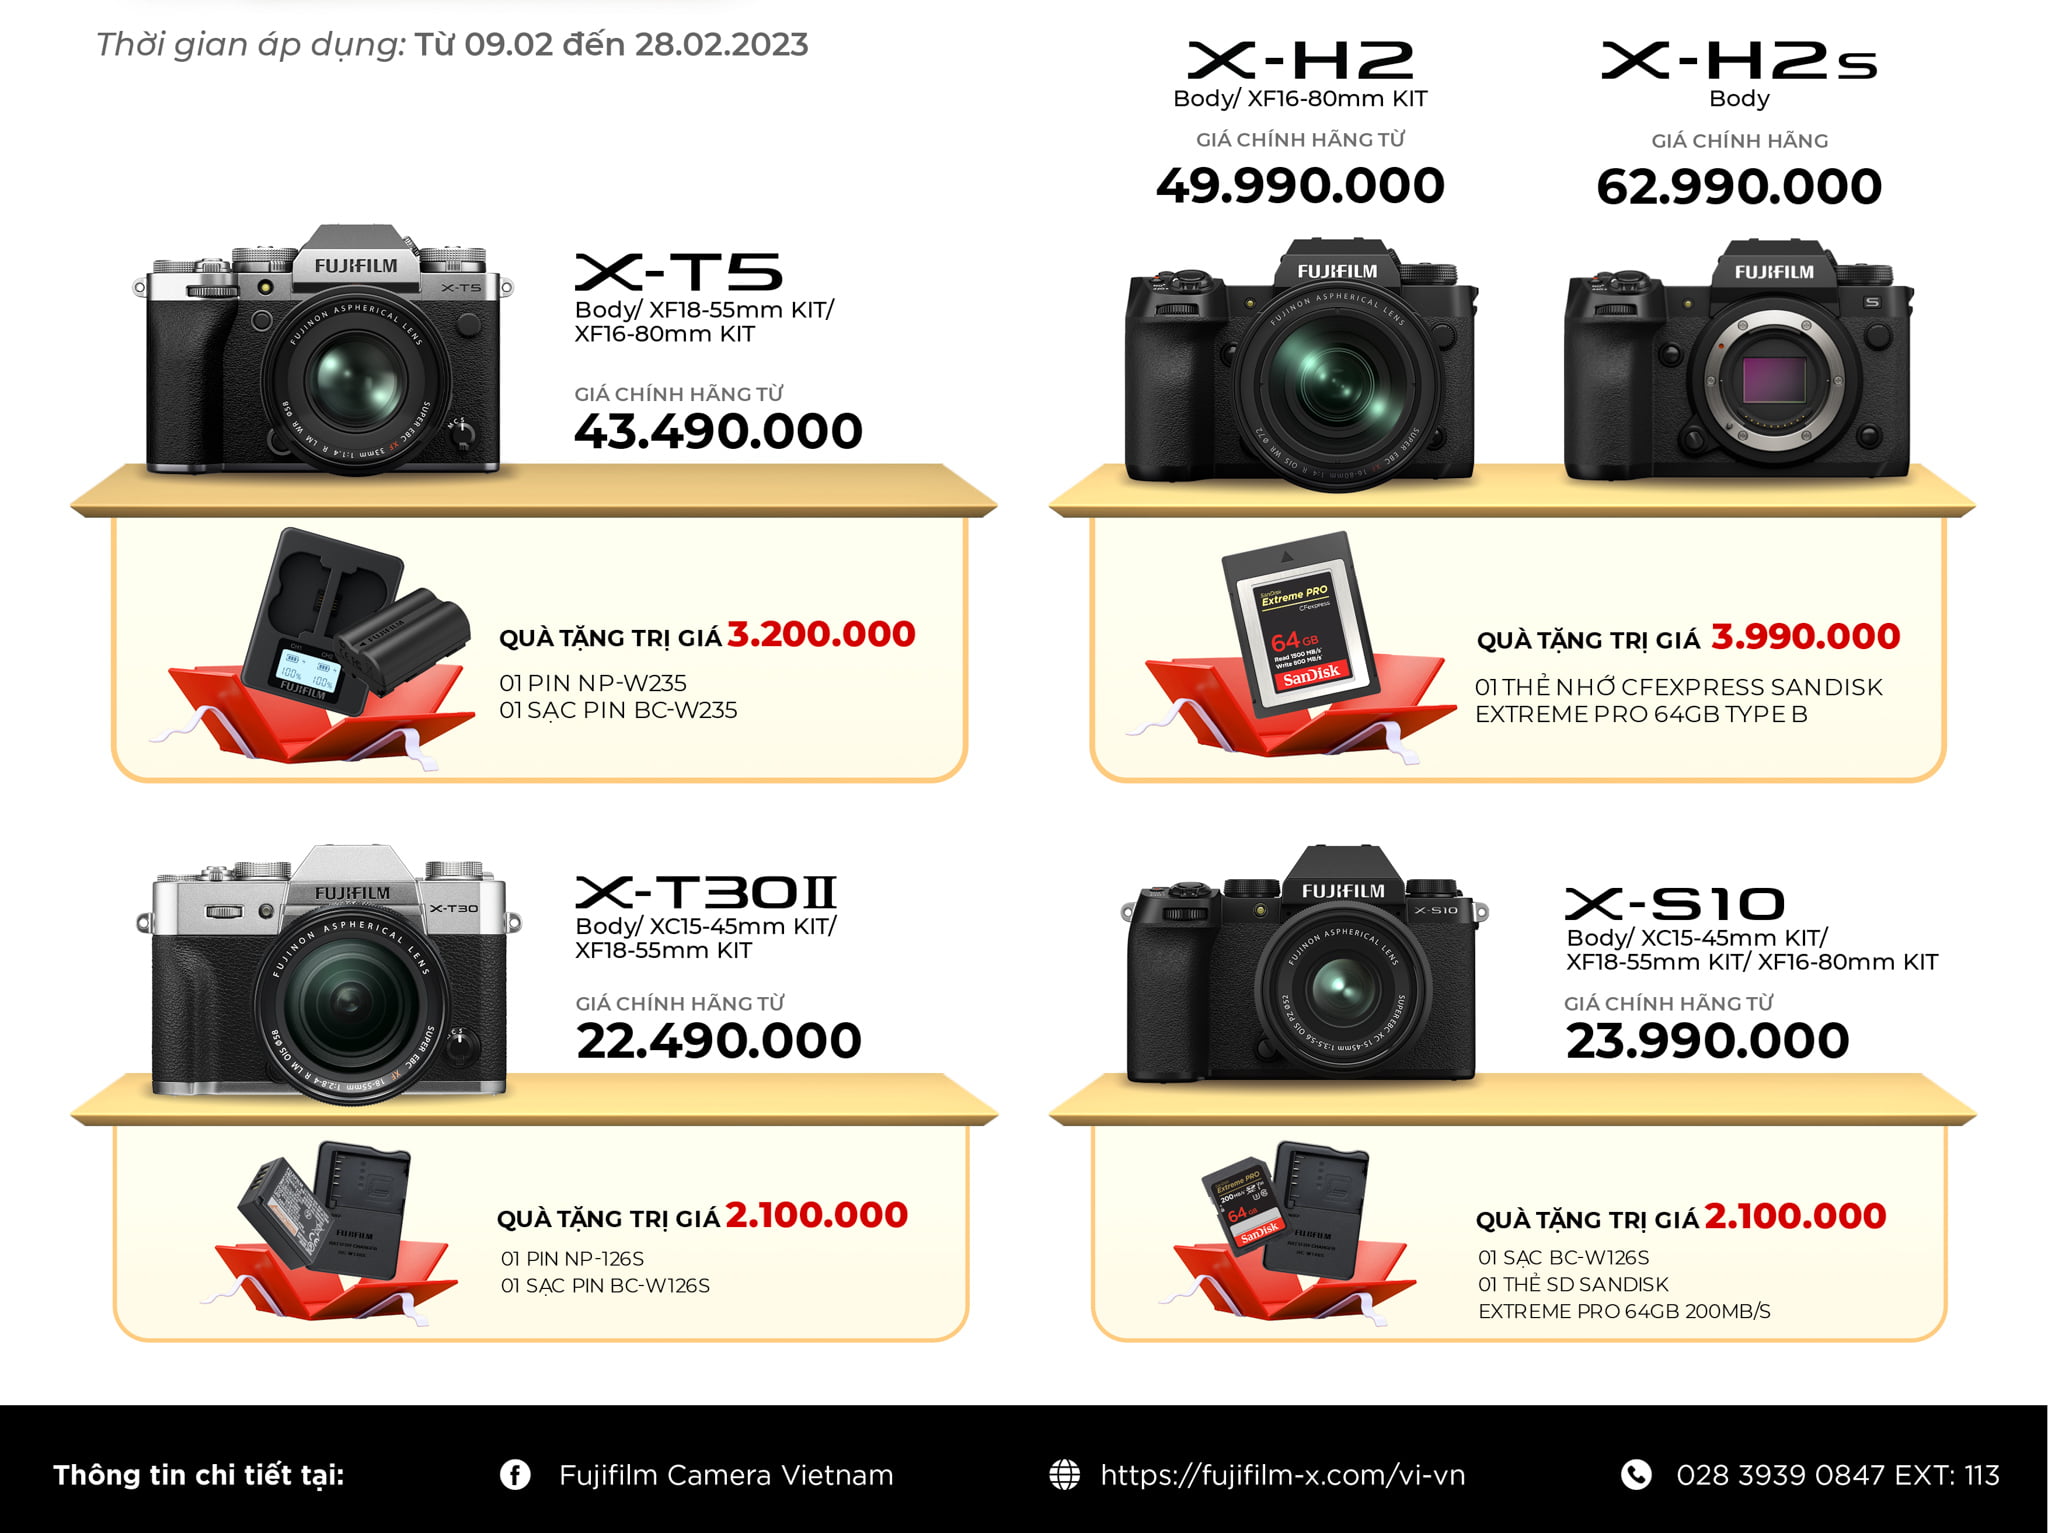 Khuyến mãi tháng 2 giảm giá loạt máy ảnh và ống kính Fujifilm tại WinWinStore